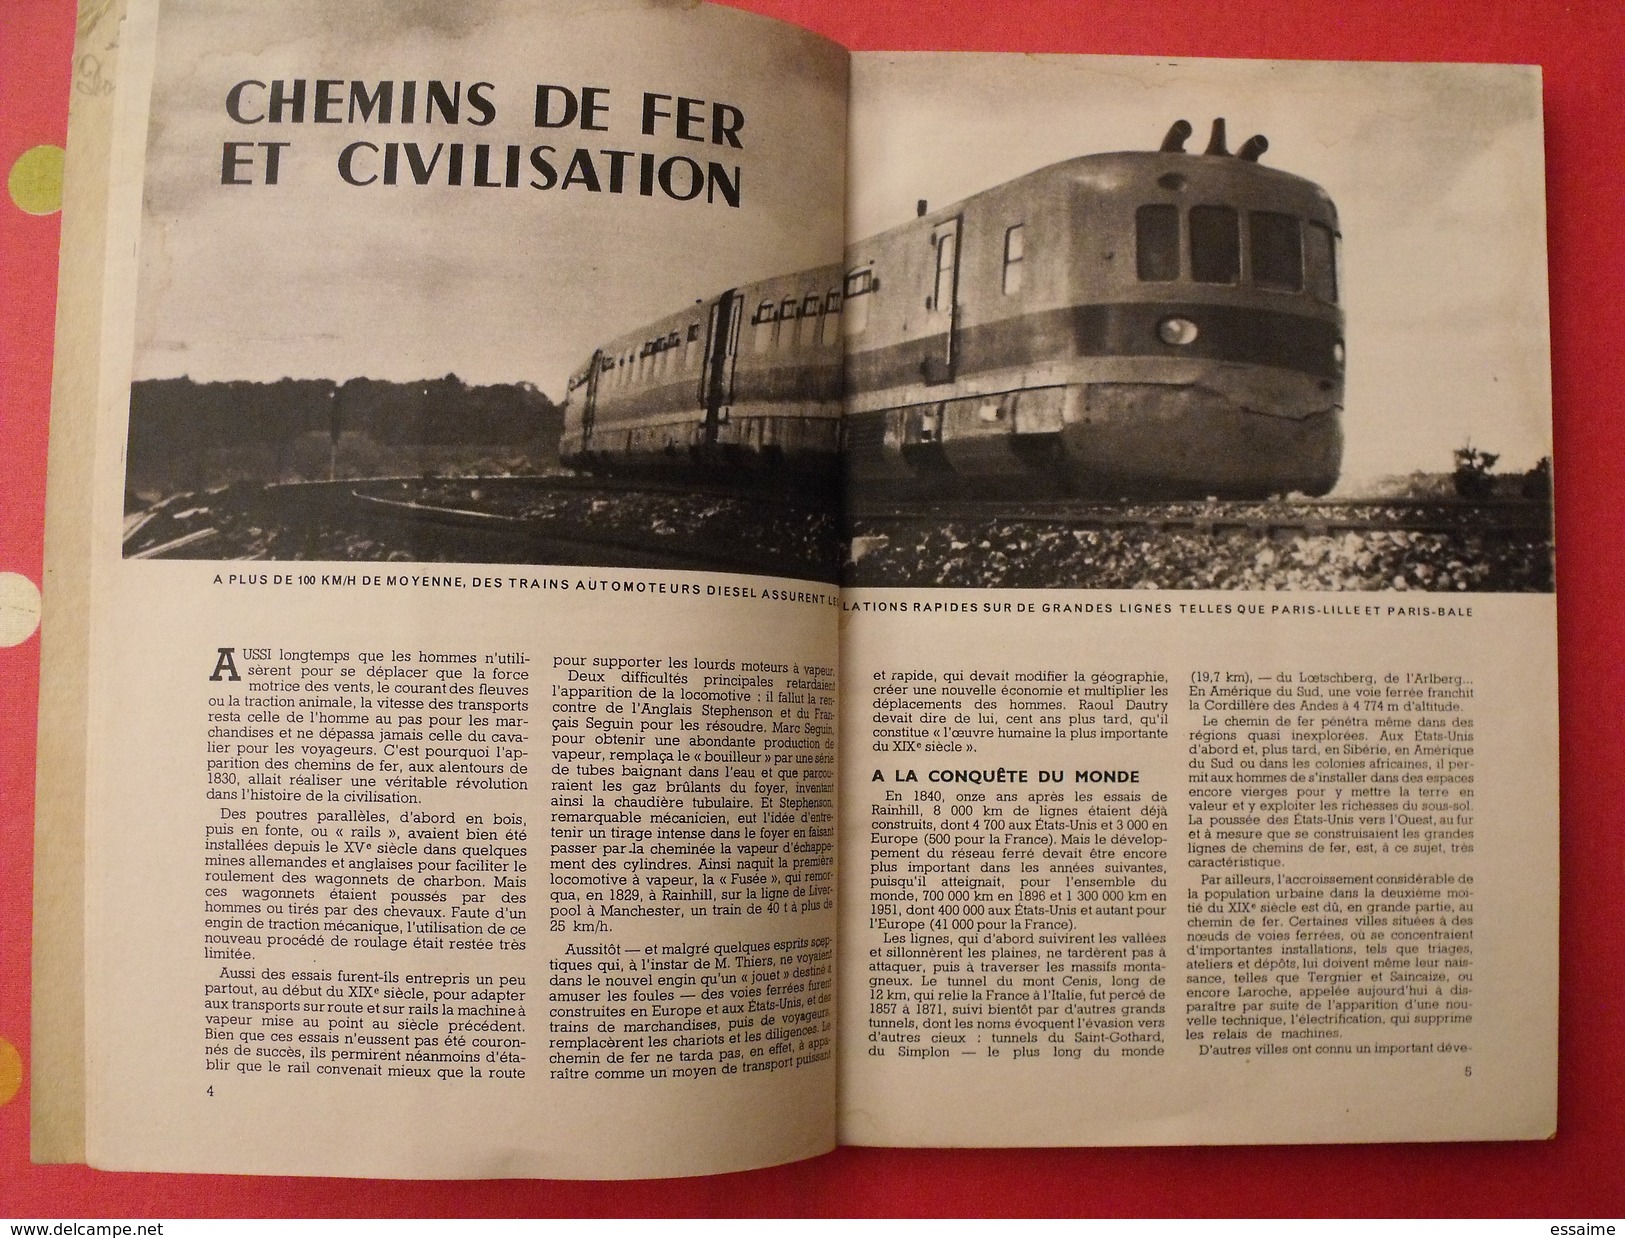 Science Et Vie. N° Spécial Chemins De Fer 1952. Illustrations Train Locomotive Micheline Autorail - Chemin De Fer & Tramway